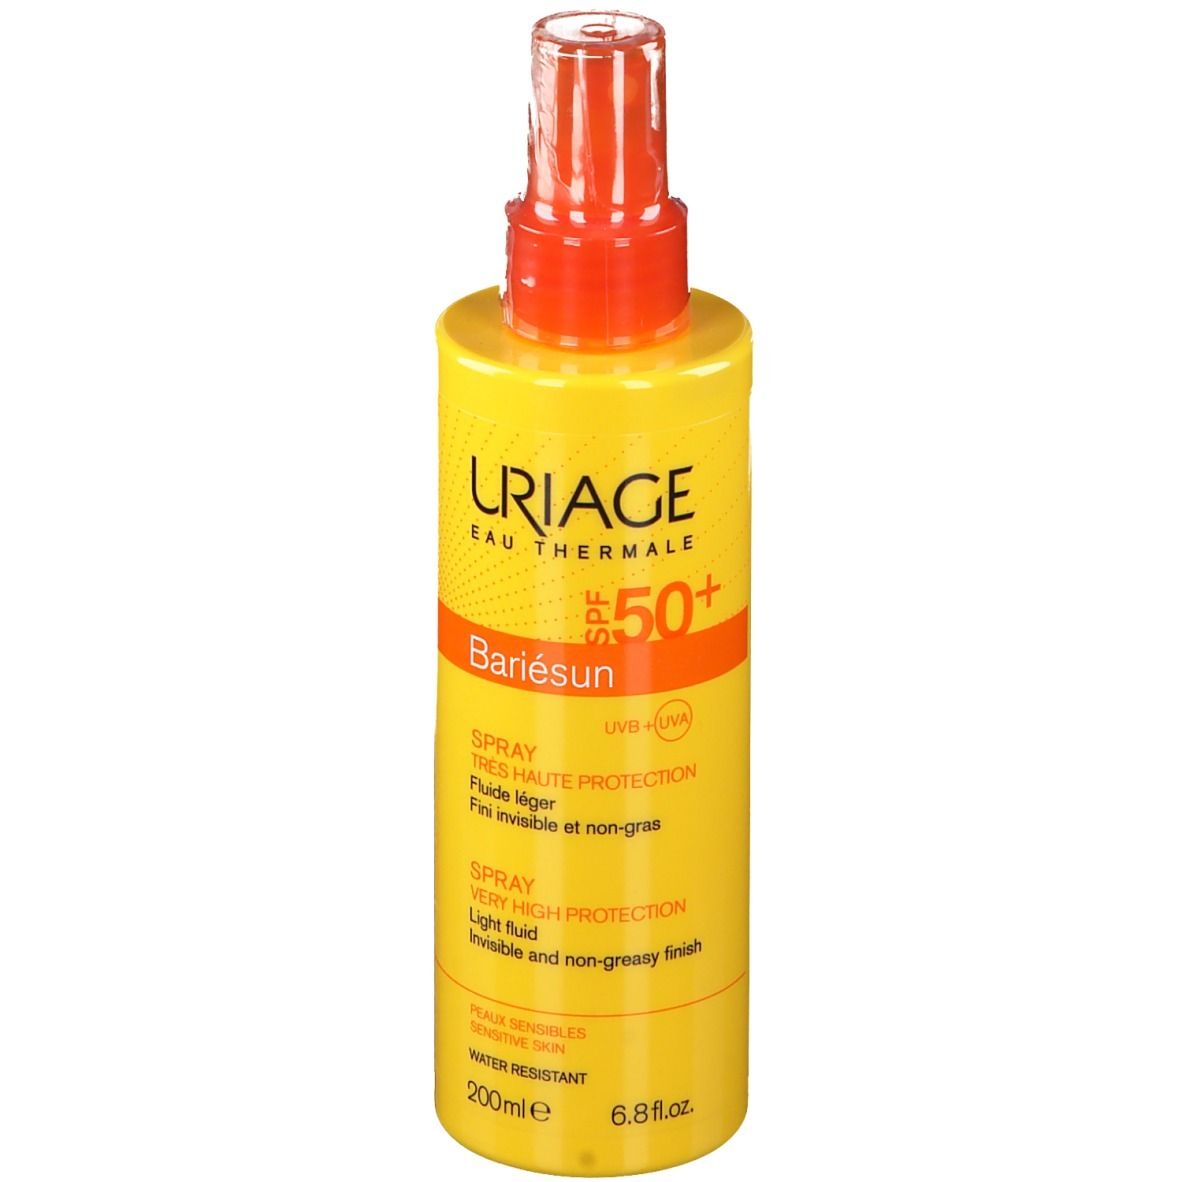 Uriage Bariésun Spray LSF 50+